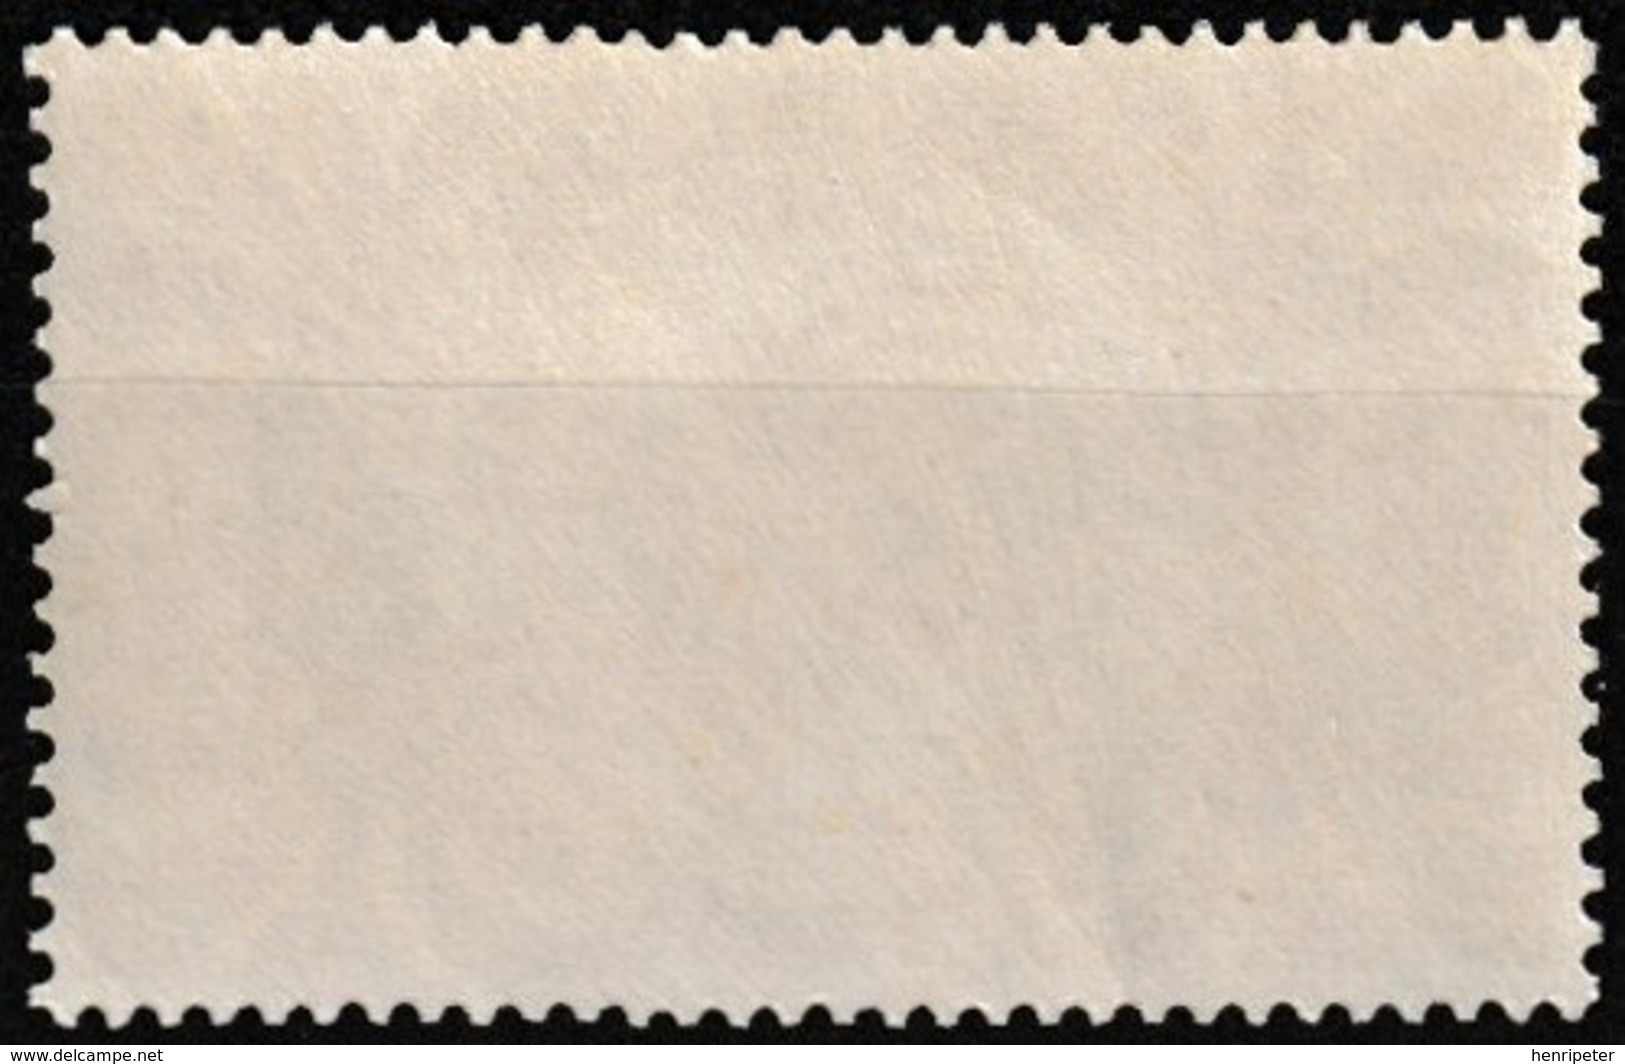 Timbre-poste Gommé Neuf** - Série De Londres Cagou - N° 230 (Yvert) - Nouvelle-Calédonie Et Dépendances 1942 - Nuovi